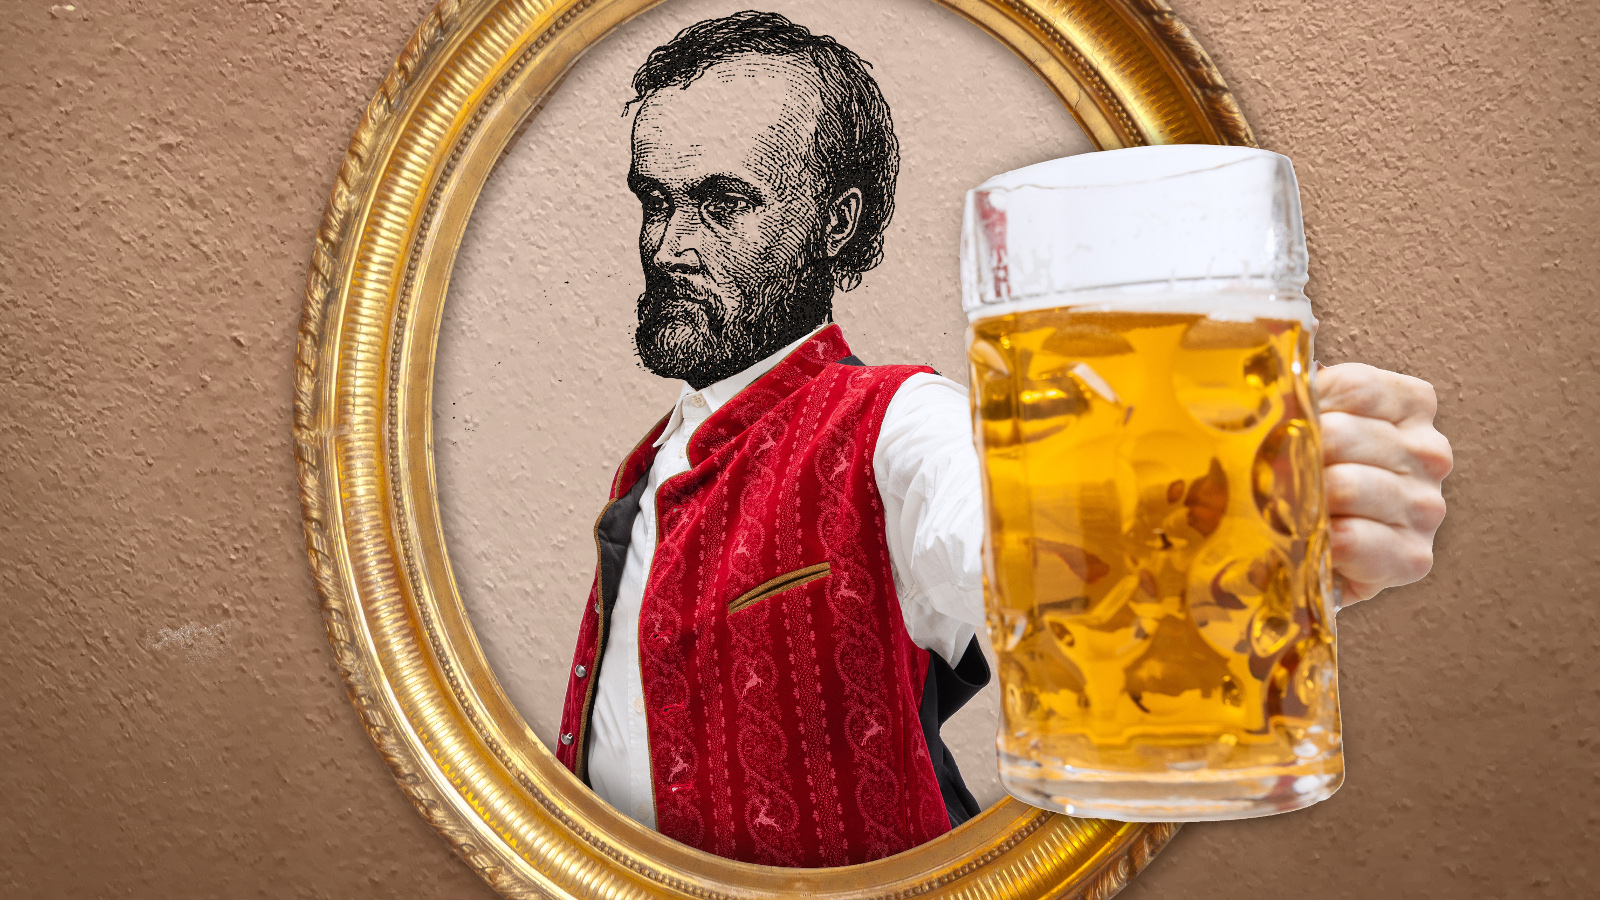 Kuvassa on Aleksis Kiven potretti ja edessä oluttuoppi, joka on suuri.